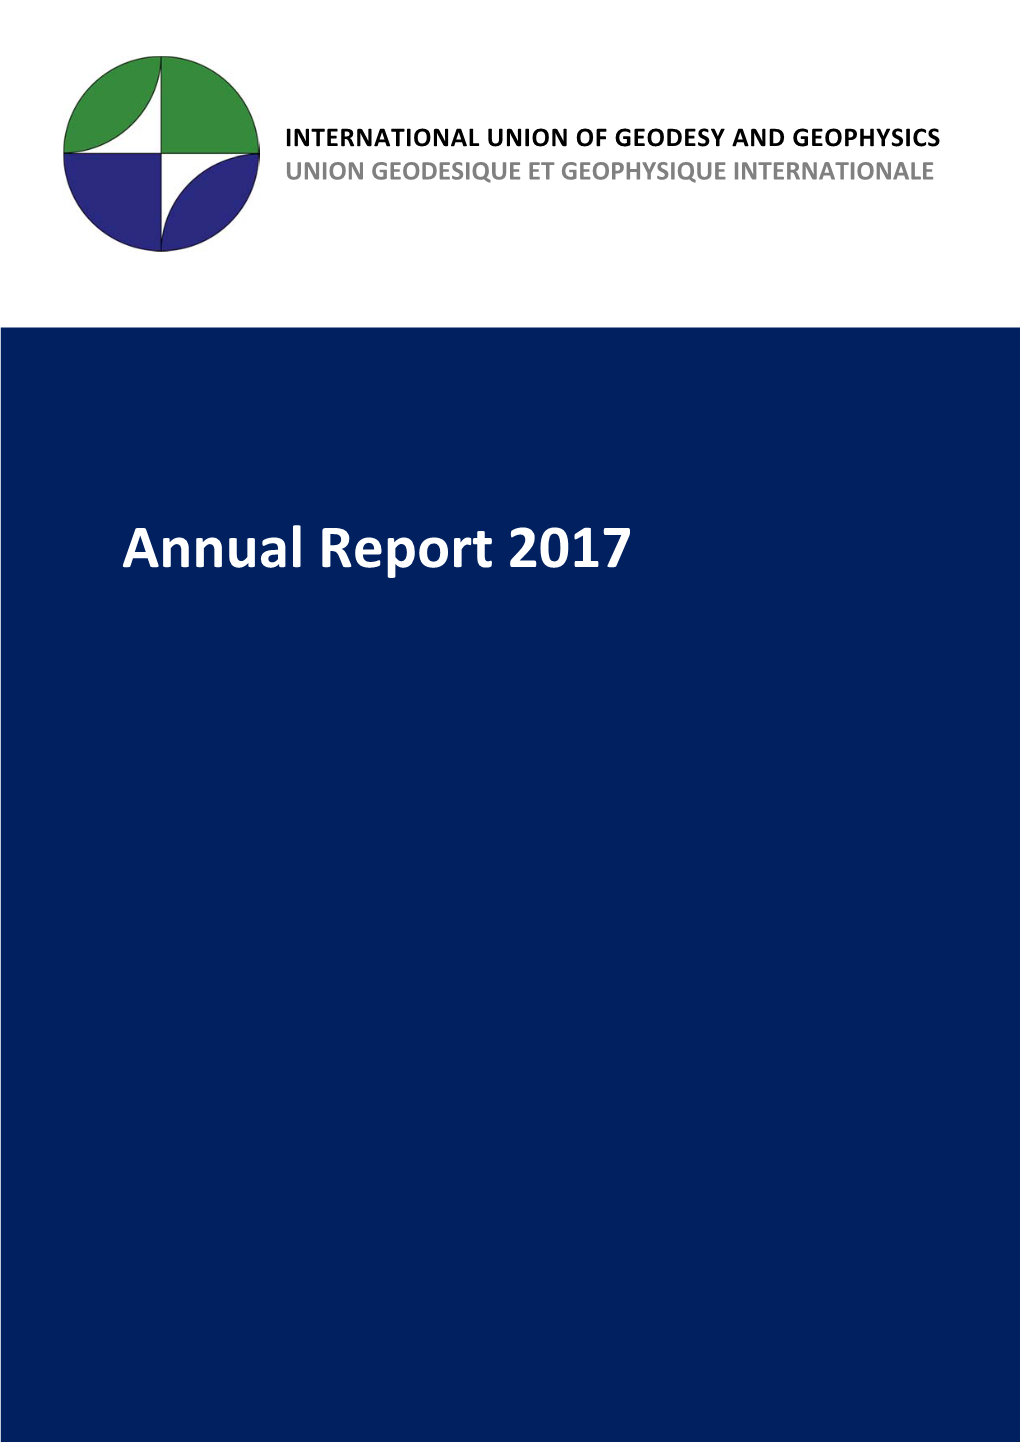 IUGG Annual Report 2017